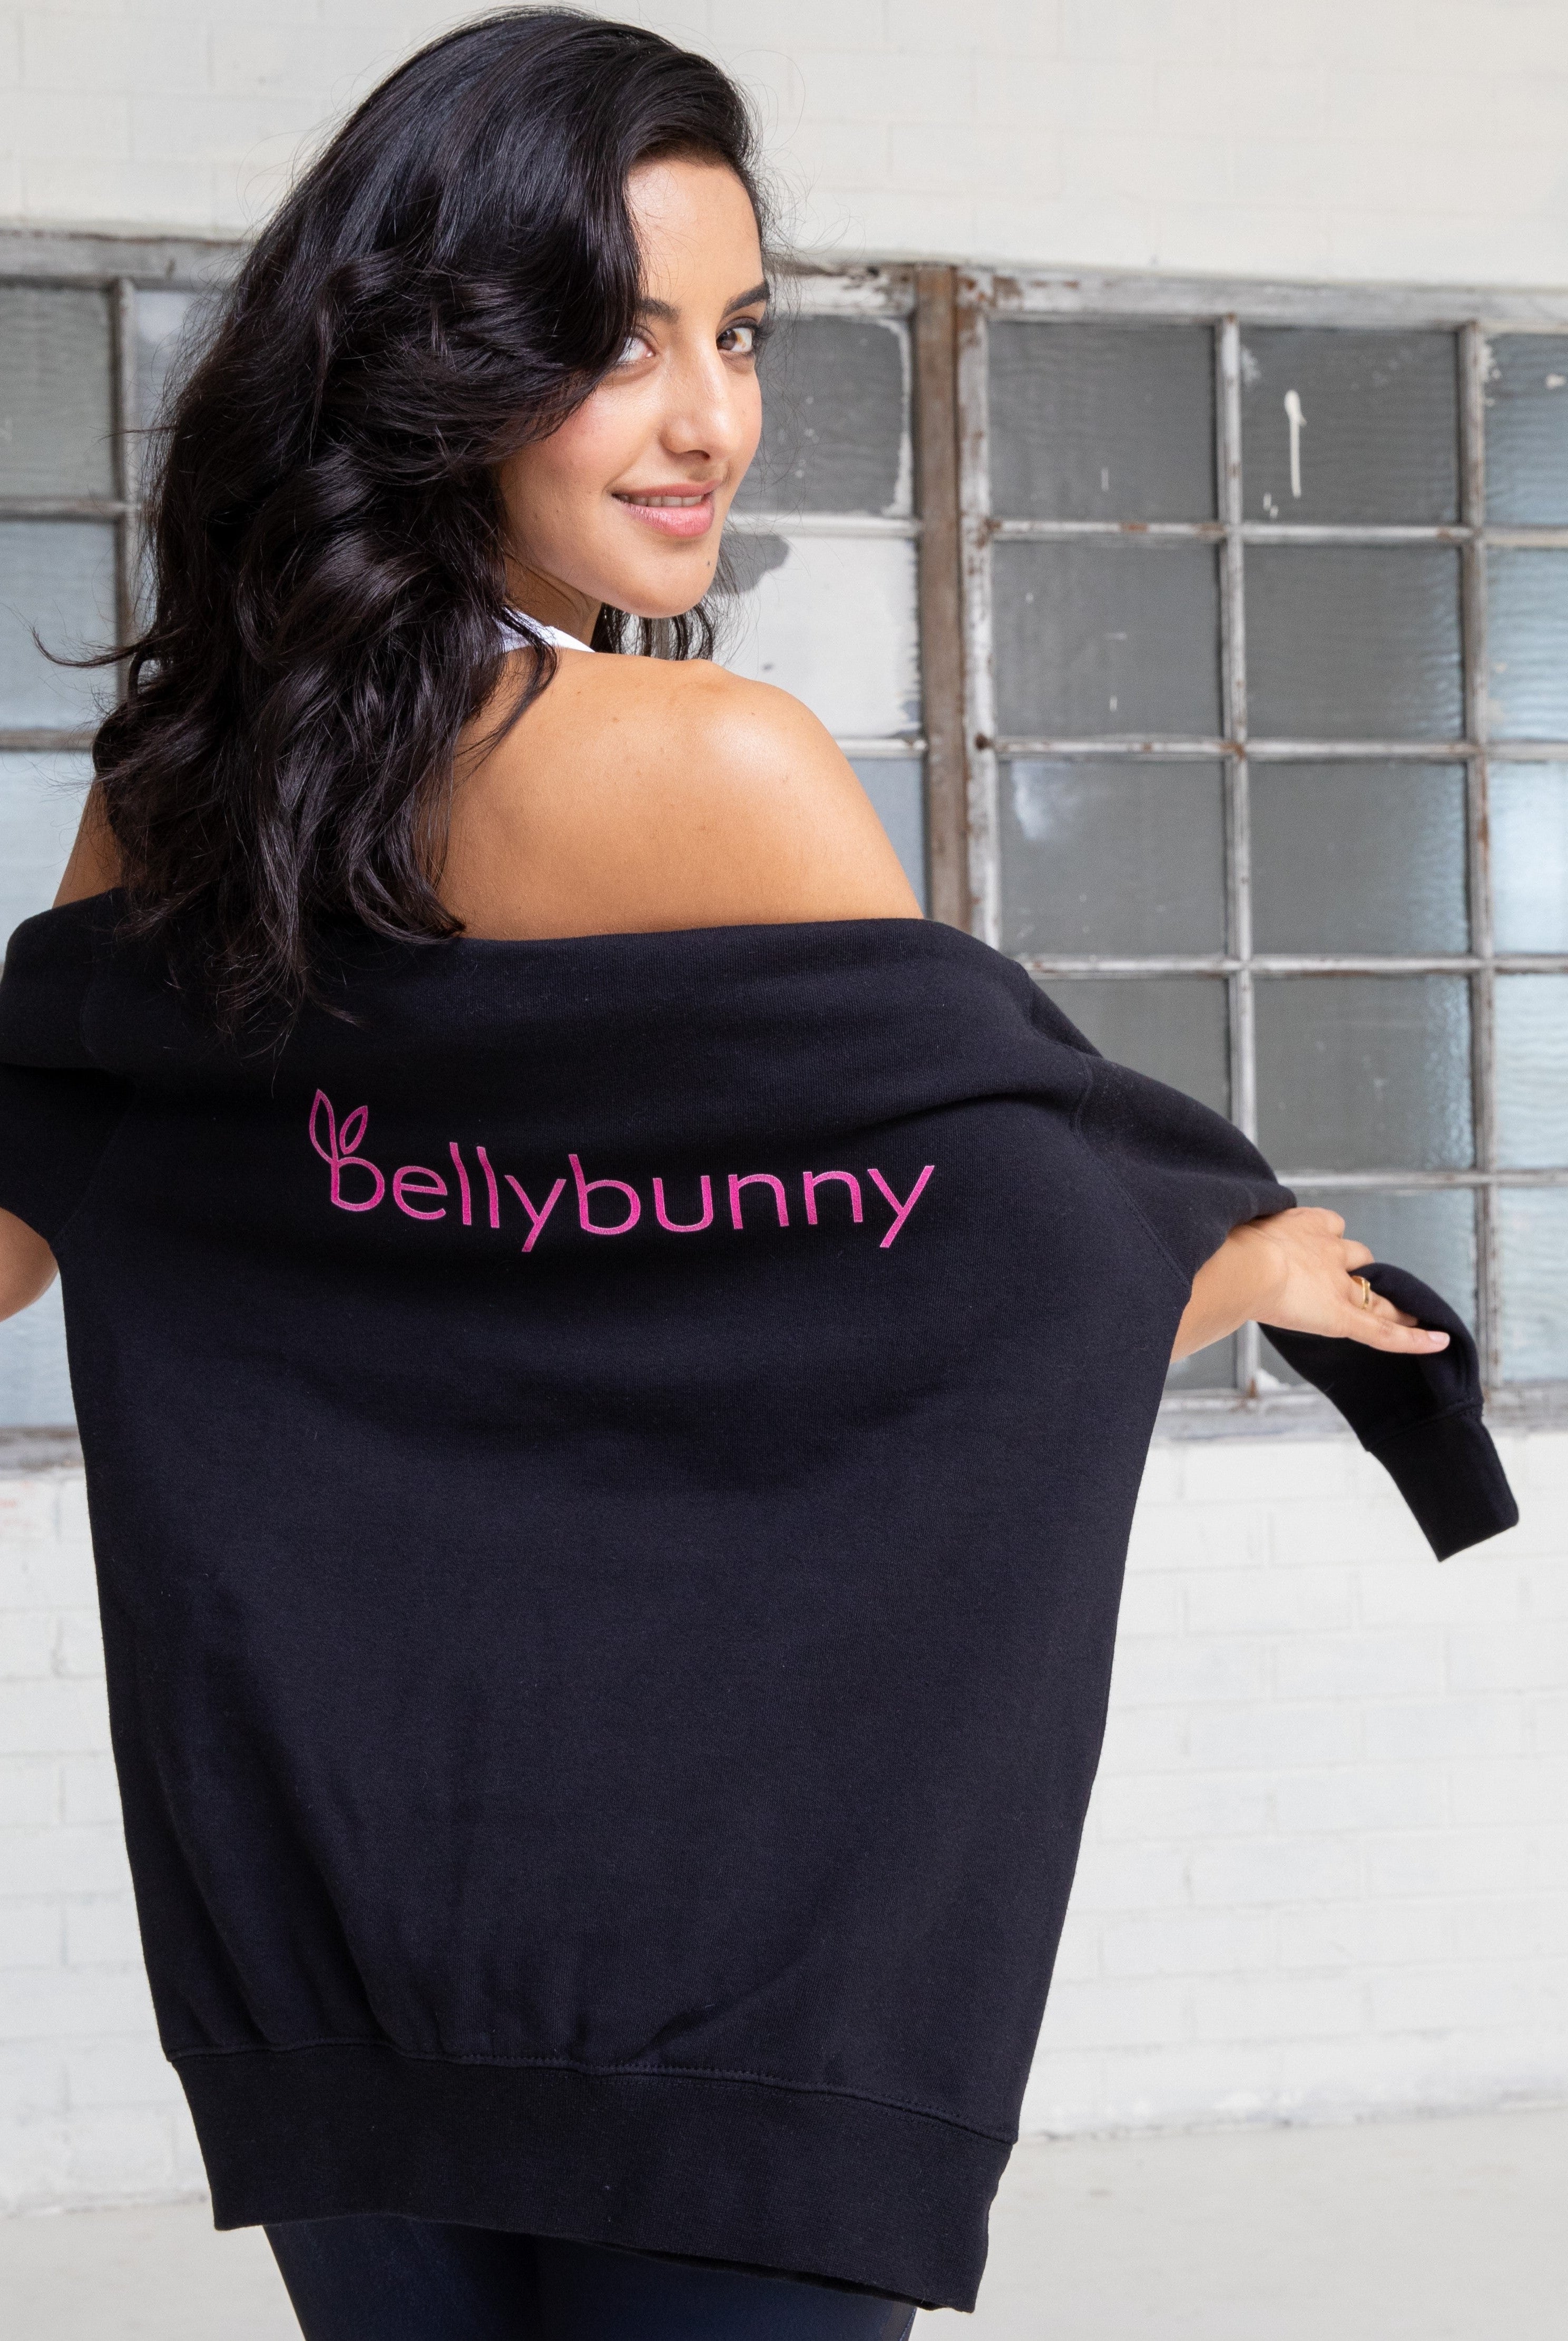 Bellybunny Sweatshirt  black with pink logo